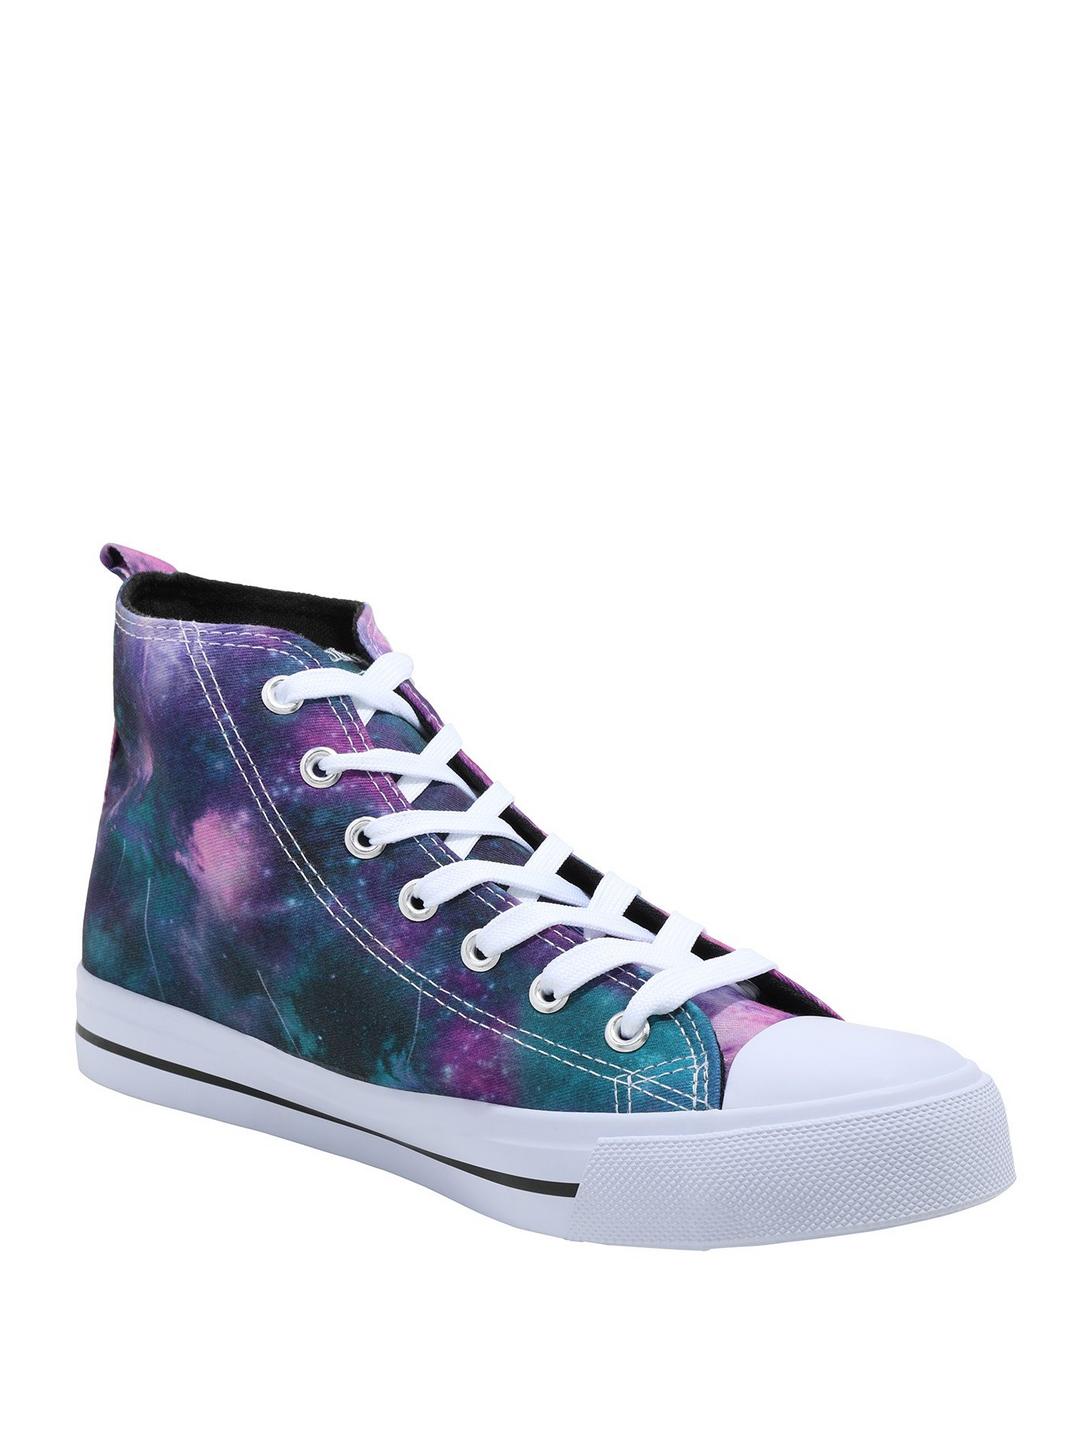 Pastel Galaxy Hi-Top Sneakers, MULTI, hi-res